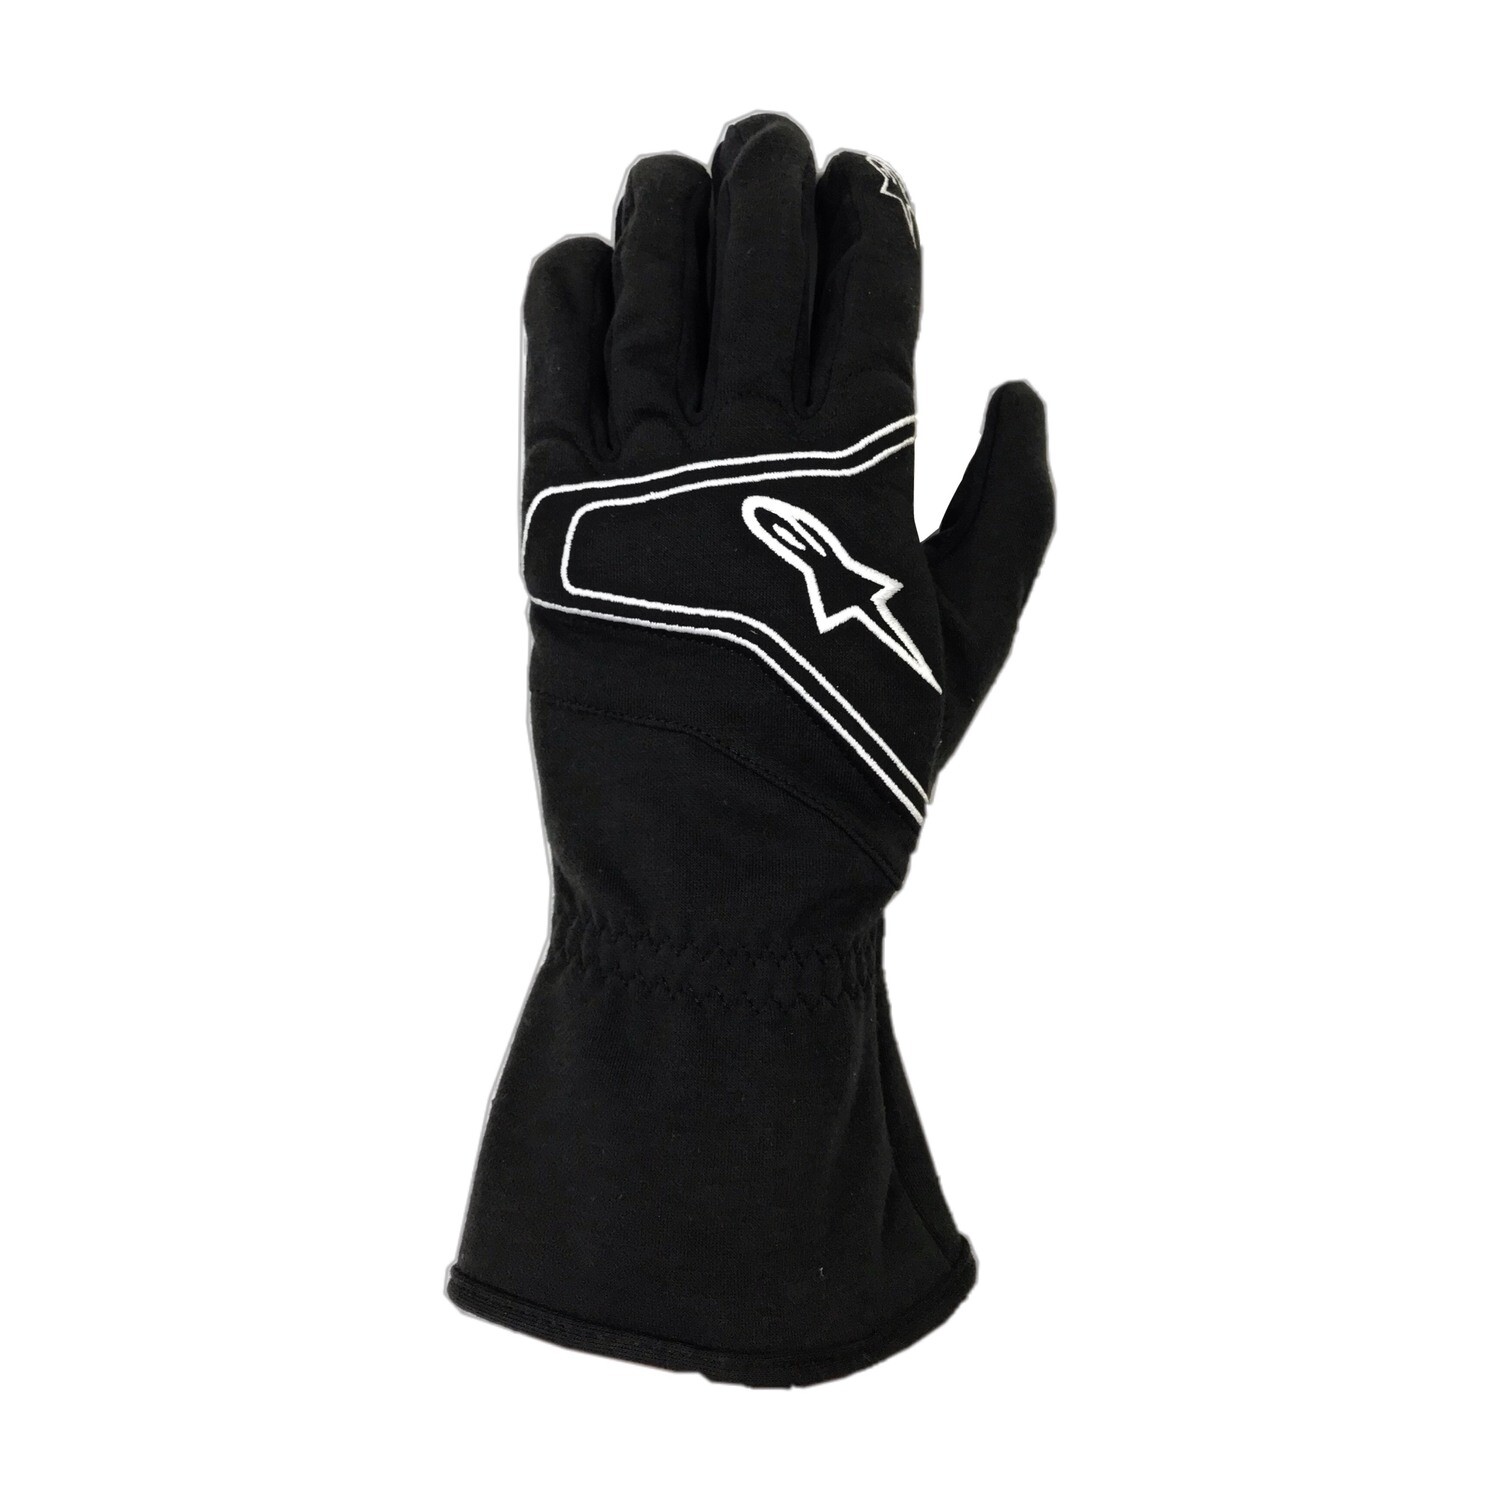 Alpinestars Tech 1-KR Black/White gloves